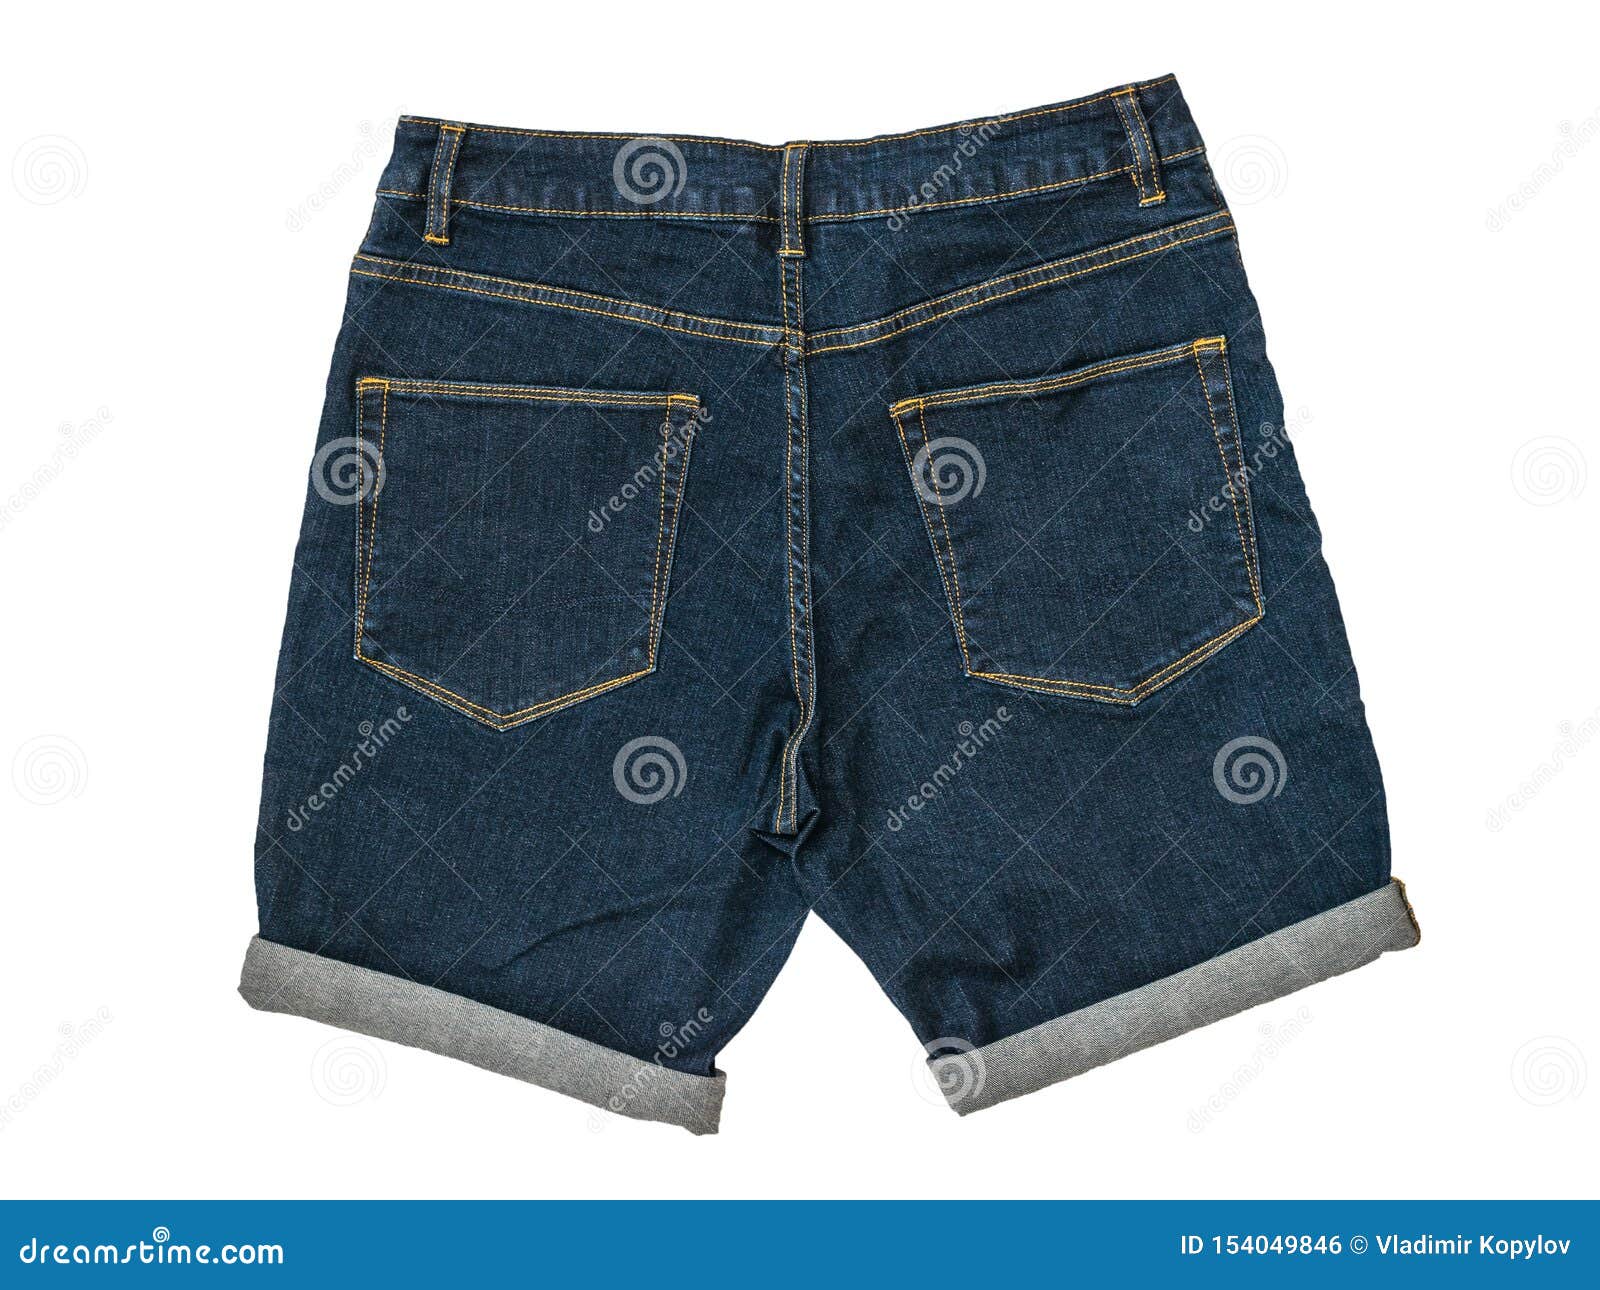 Blue Denim Shorts Isolated On A White Background. Fashionable Unisex ...